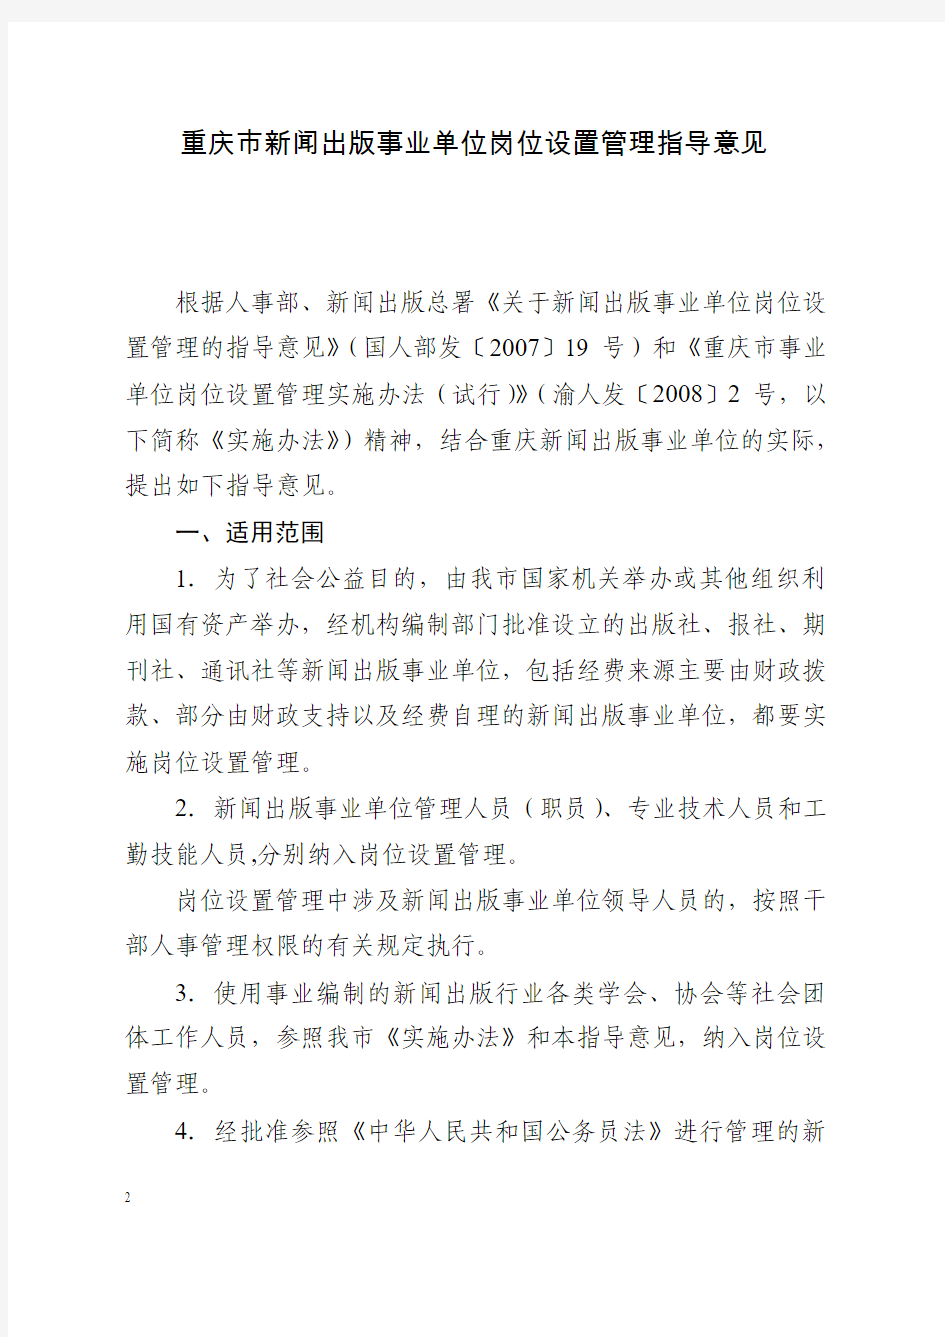 渝人发〔2008〕40号关于印发重庆市新闻出版事业单位岗位设置管理指导意见的通知